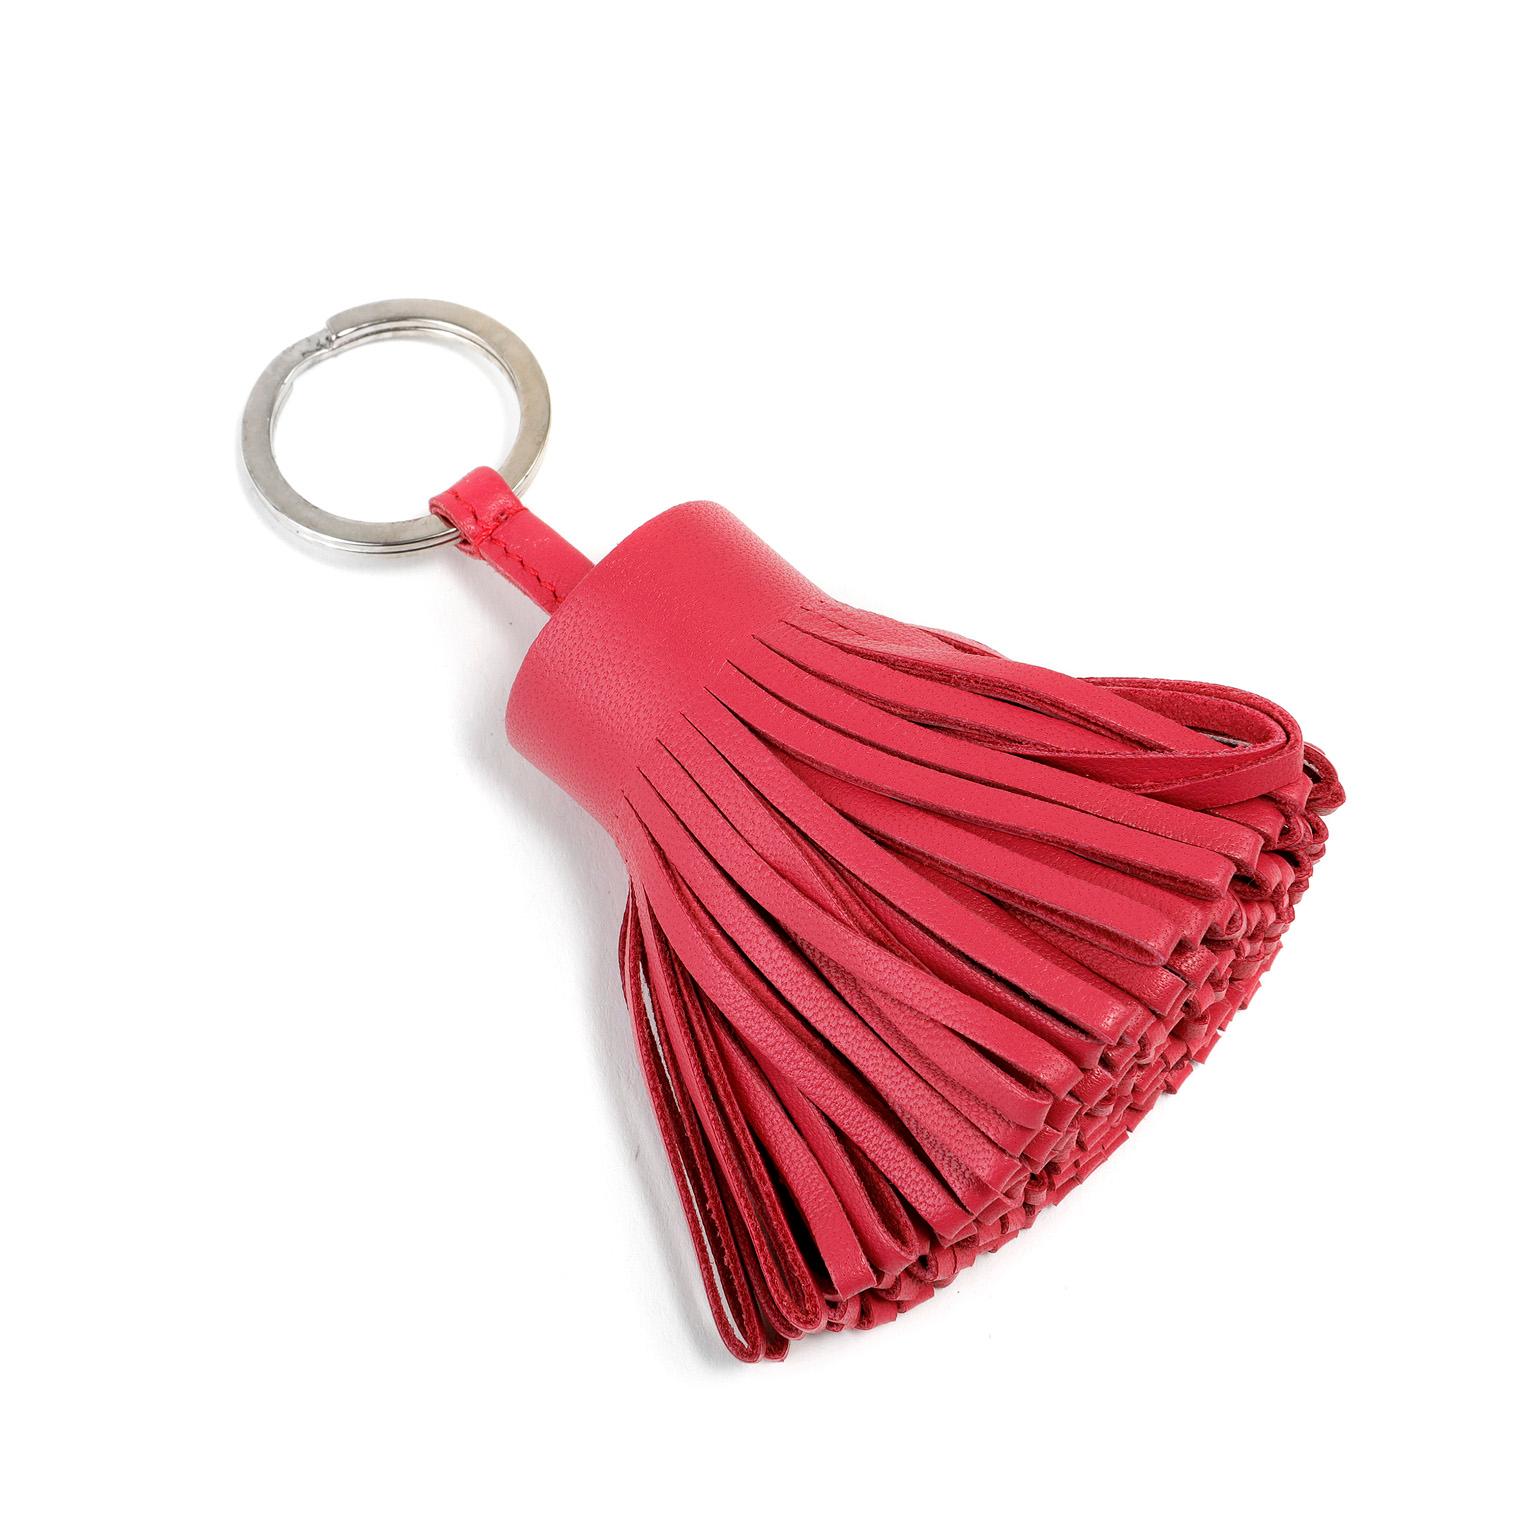 Cet authentique porte-clés Hermès en cuir rose à pompon est en parfait état.  Portefeuille à large pompon en cuir rose relié à un anneau de couleur argentée.  Transportez vos clés avec style.

PBF 11441